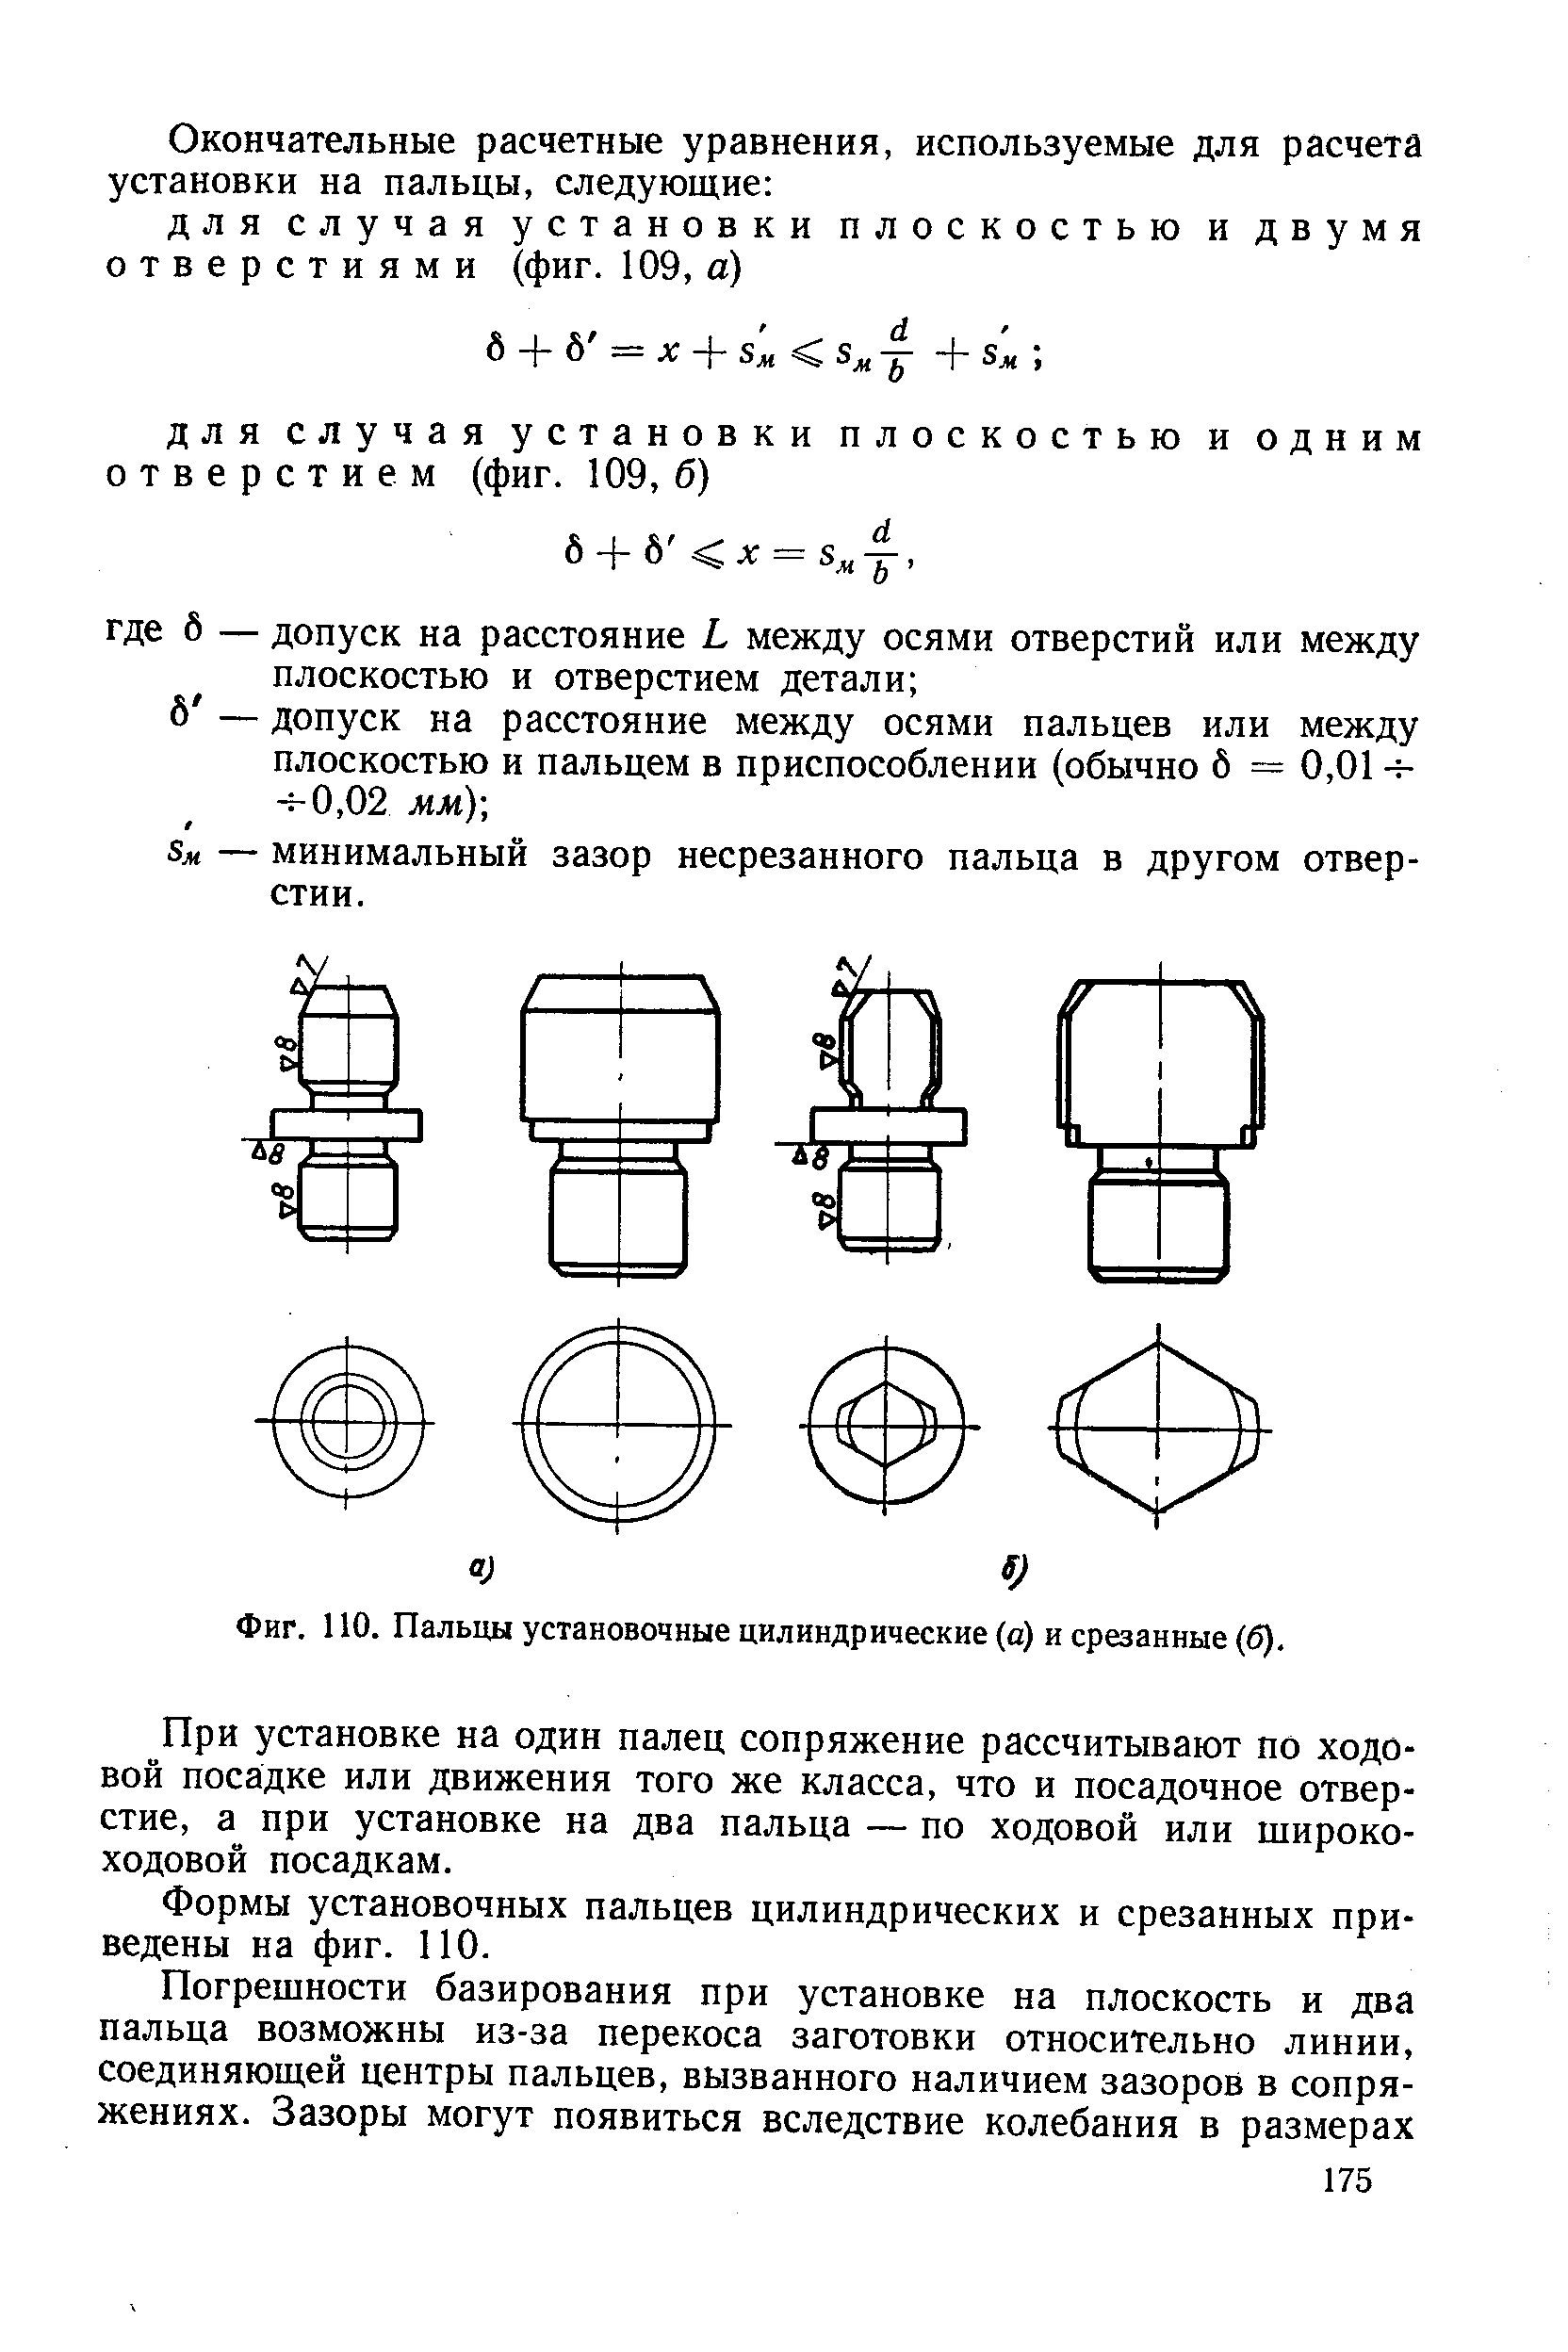 Фиг. 110. Пальцы установочные цилиндрические (с) и срезанные (б).
